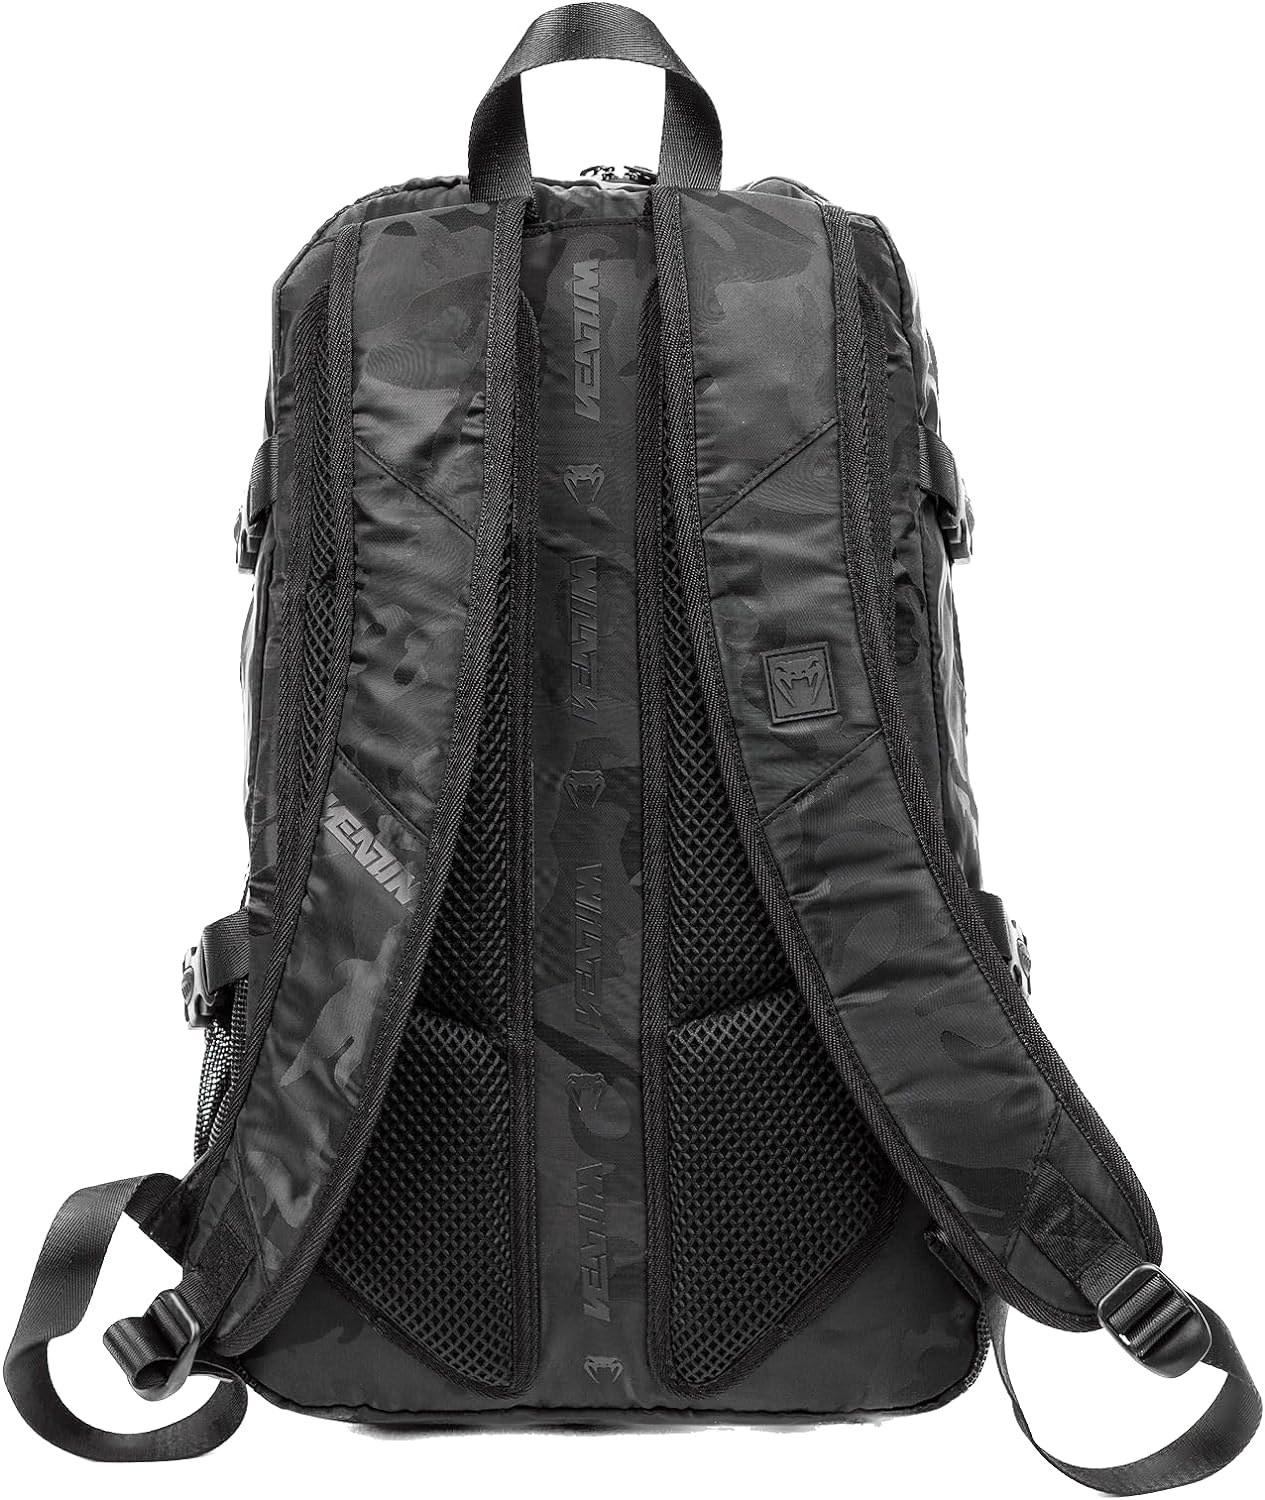  Рюкзак Venum Challenger Pro черный камуфляж 